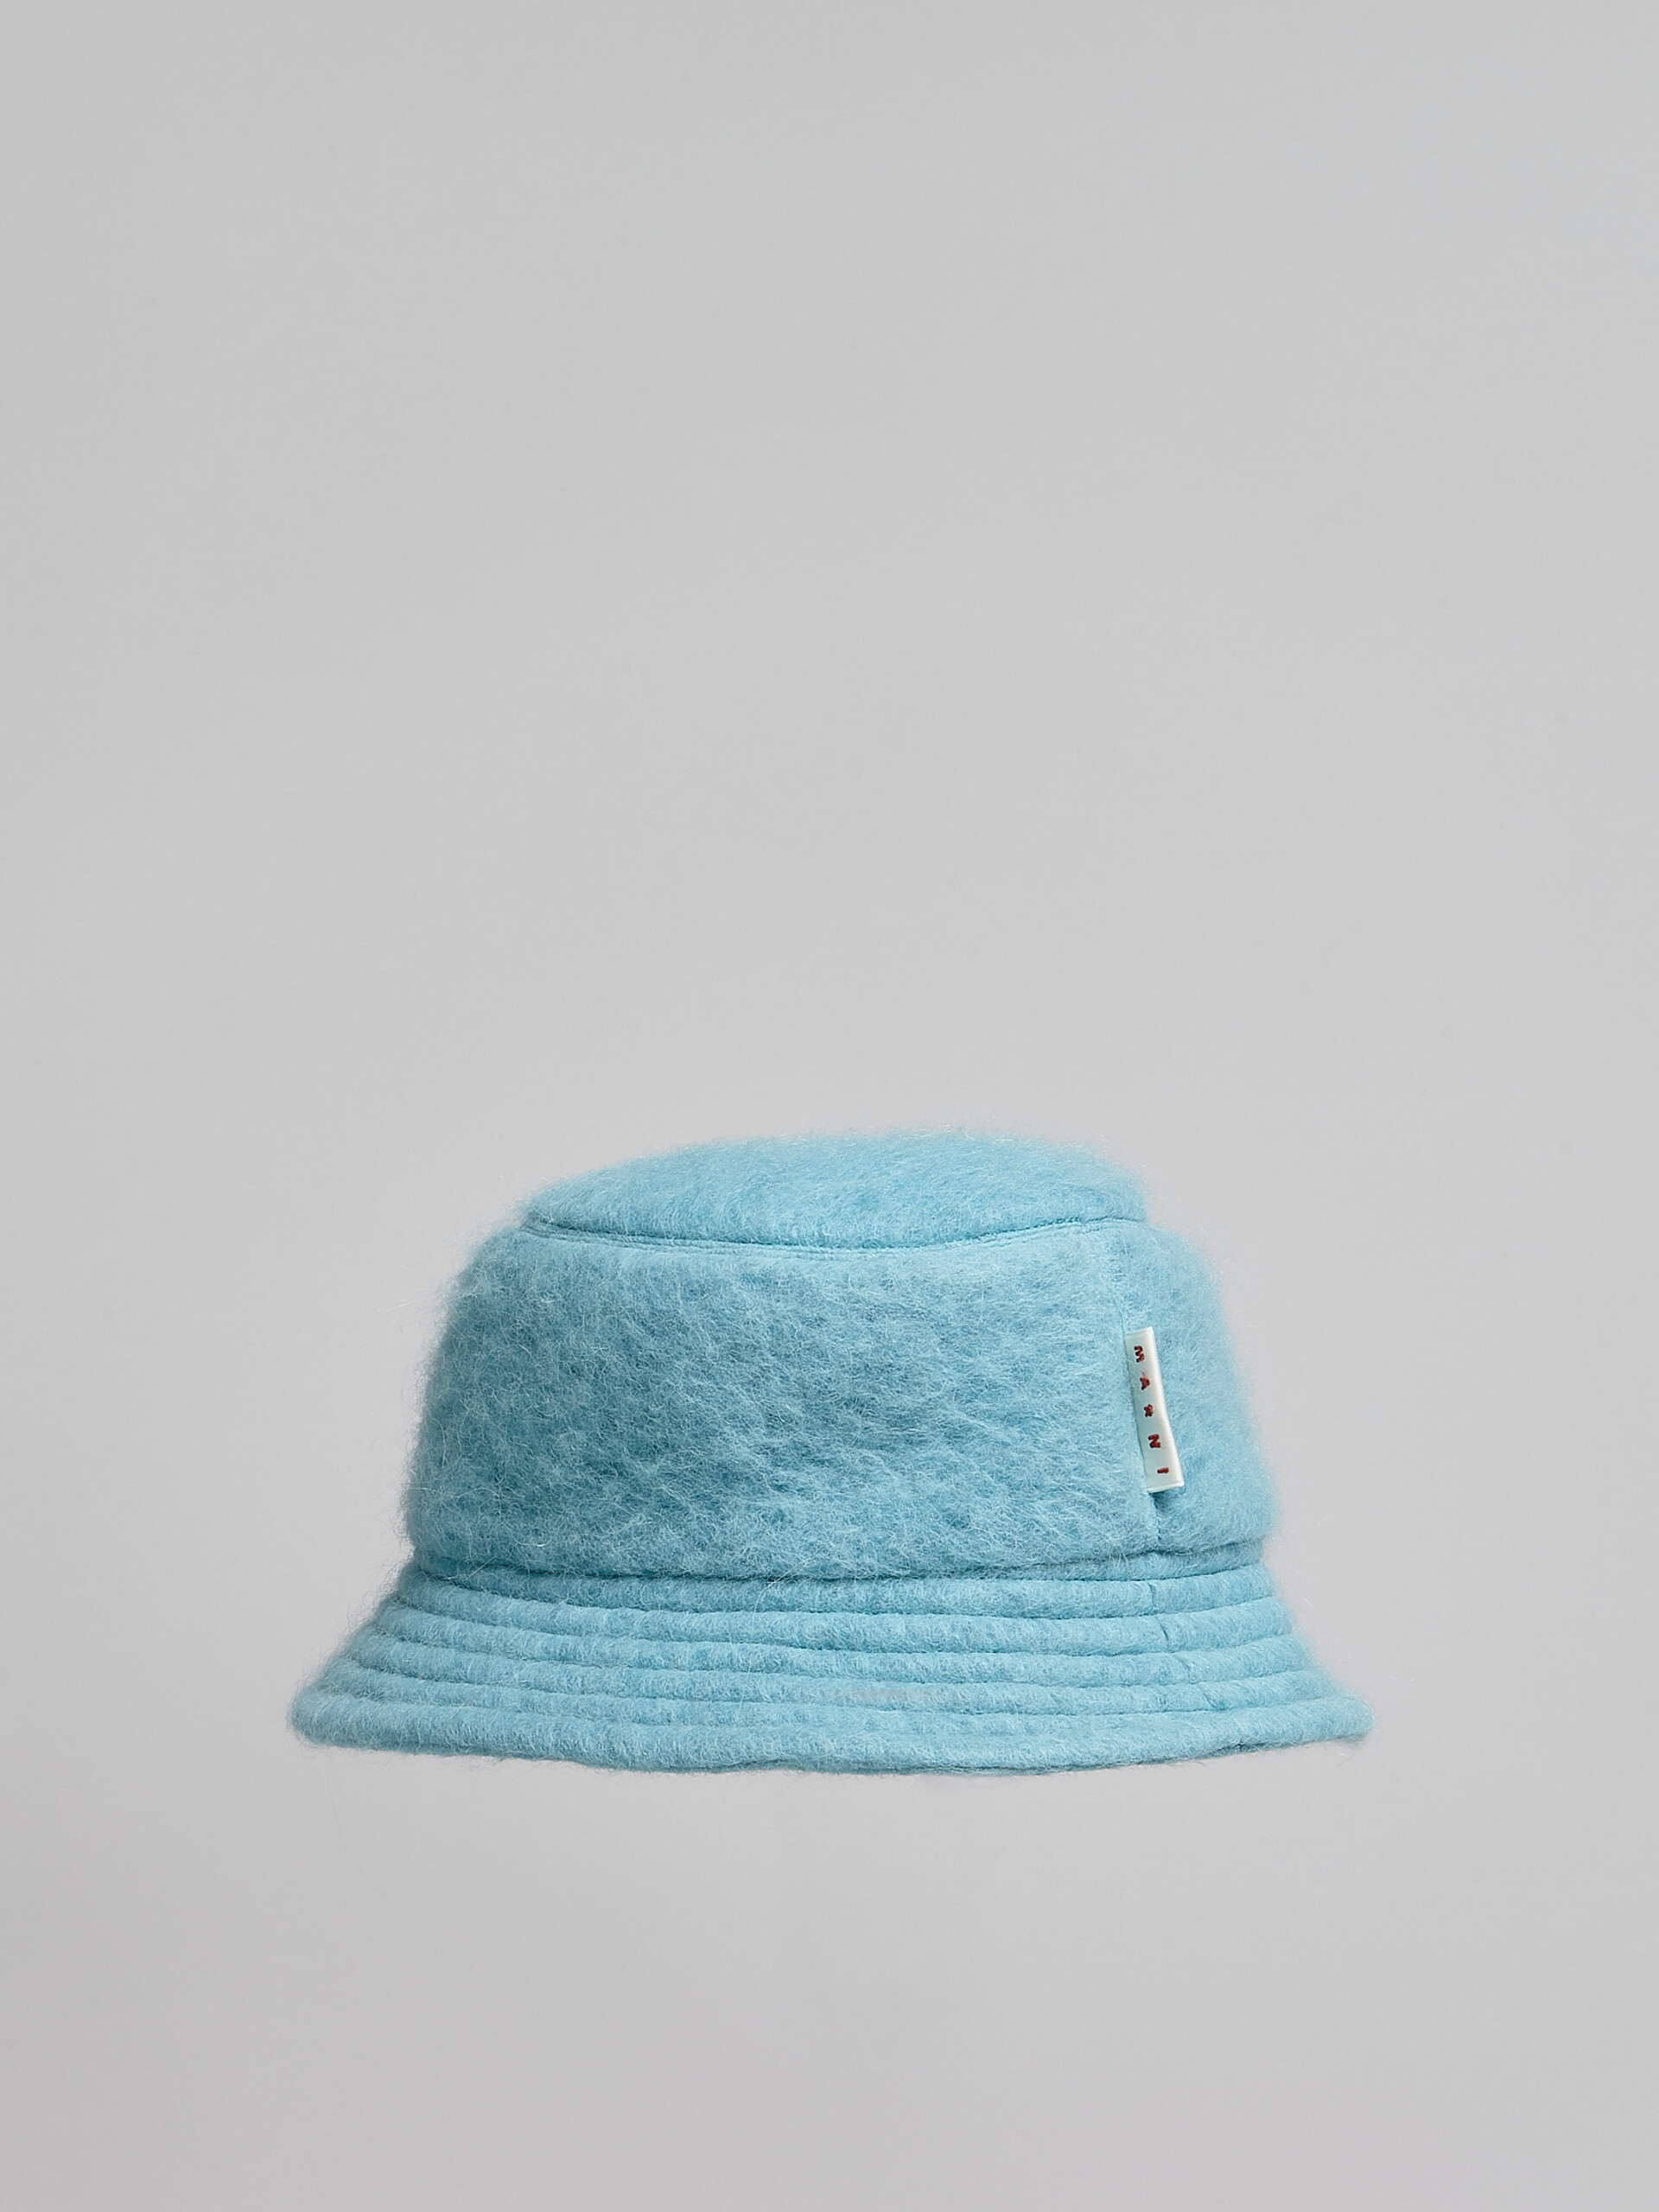 Himmelblauer Fischerhut aus gebürsteter Wollmischung - Hüte - Image 3